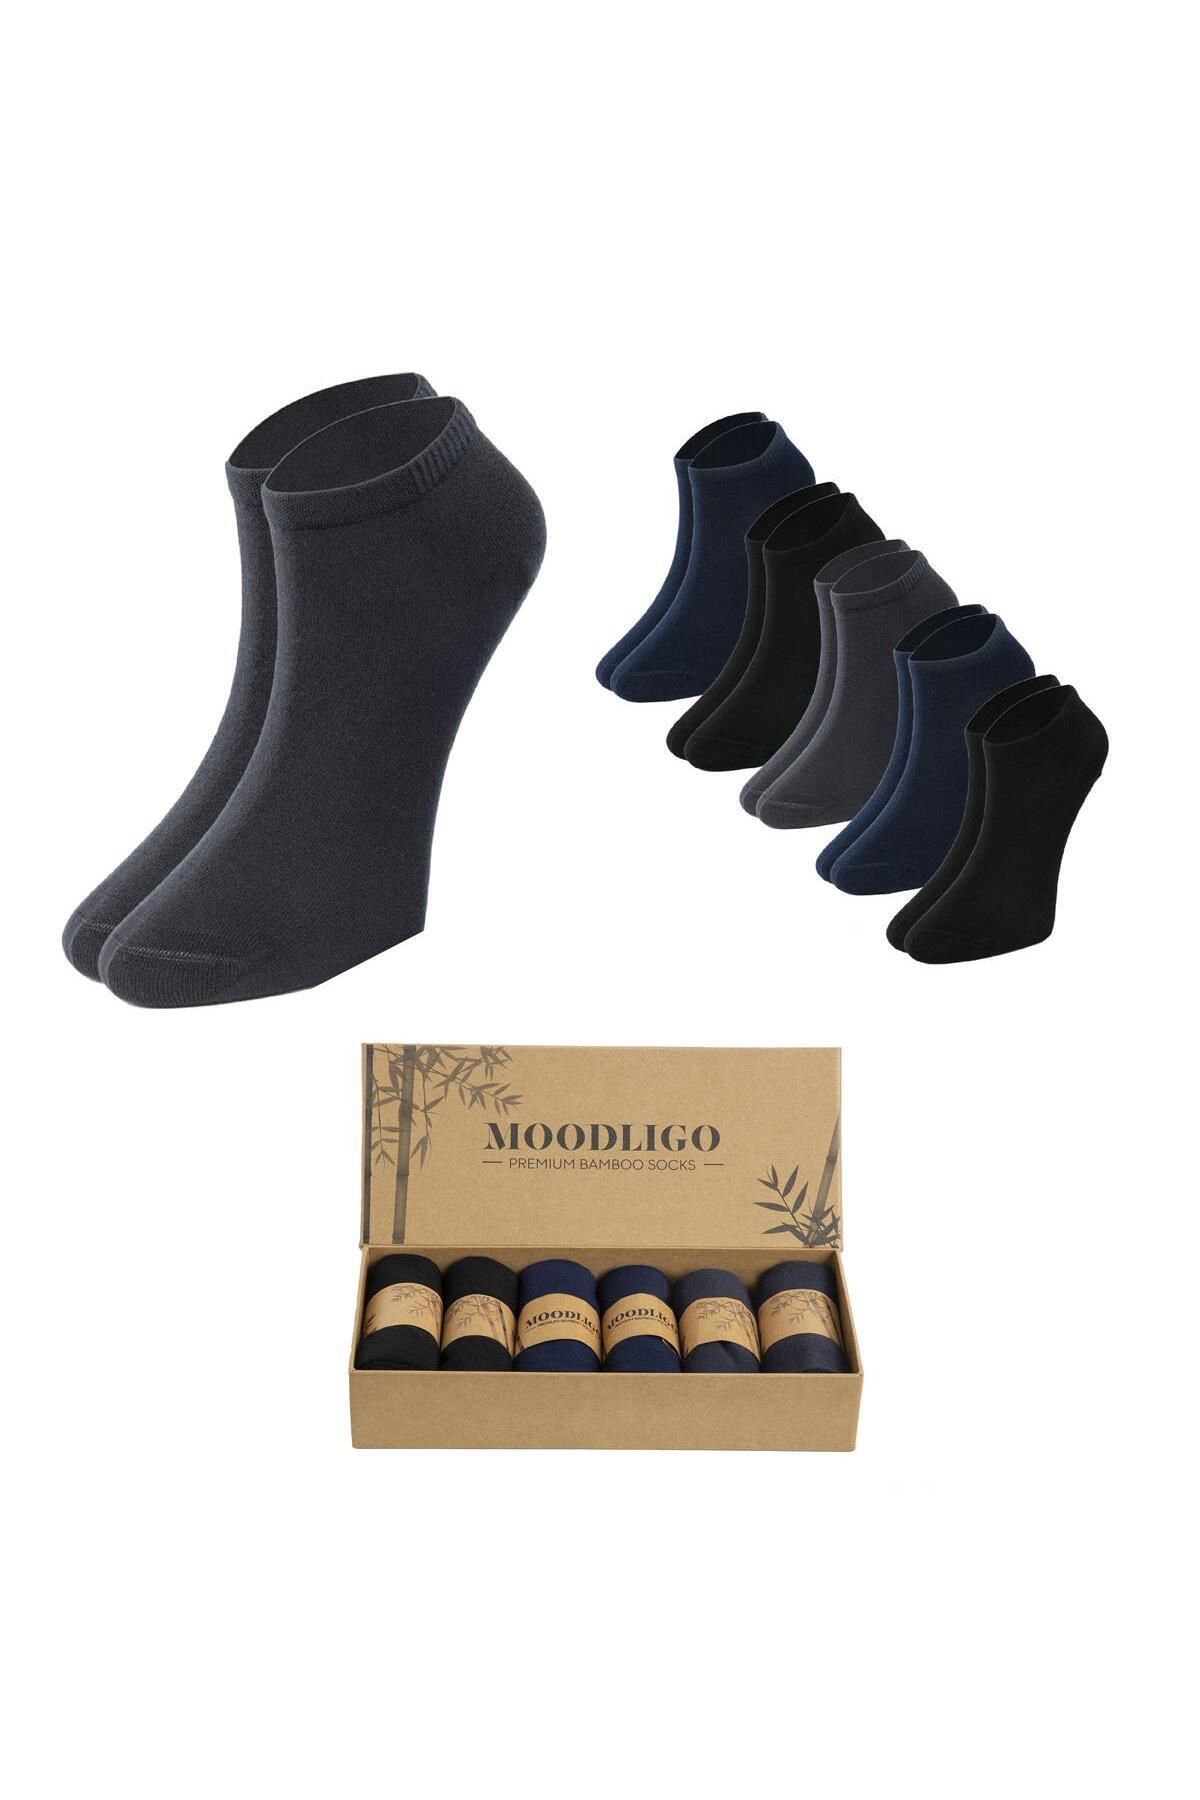 Moodligo Erkek 6'lı Premium Bambu Patik Çorap - 2 Siyah 2 Füme 2 Lacivert - Kutulu